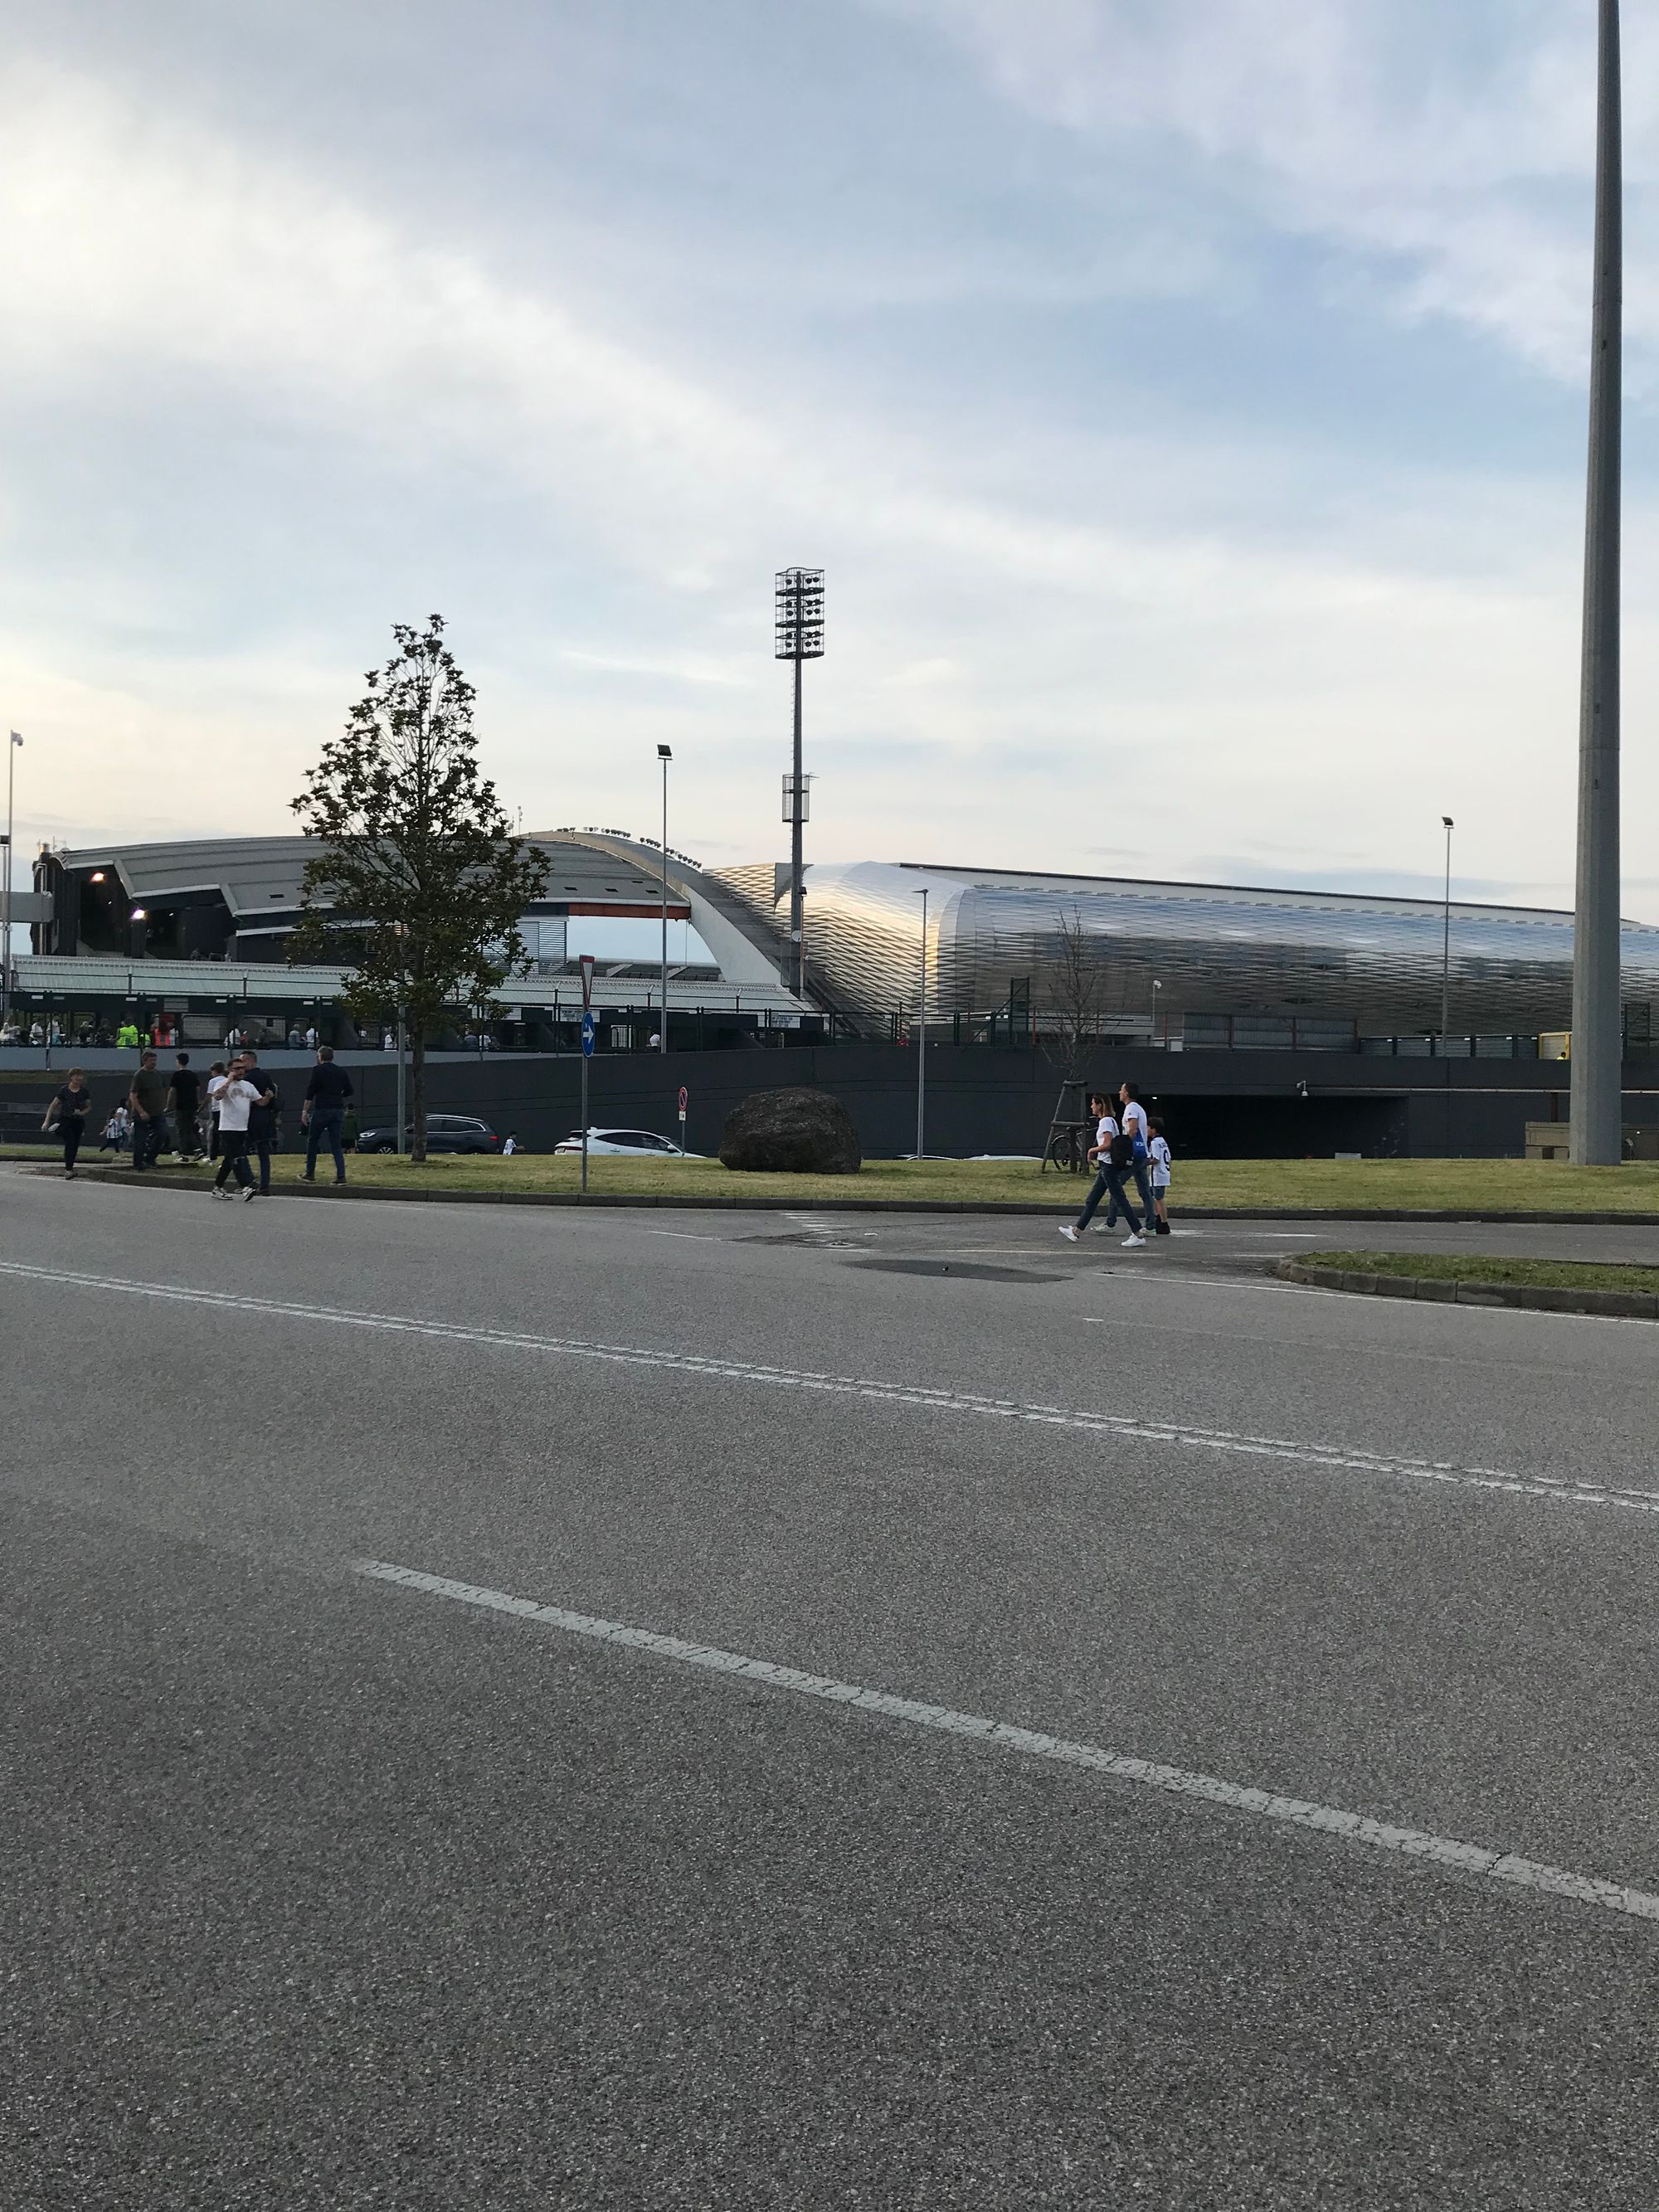 L'Udinese chiude il campionato con una sconfitta: alla Dacia Arena passa la Juventus